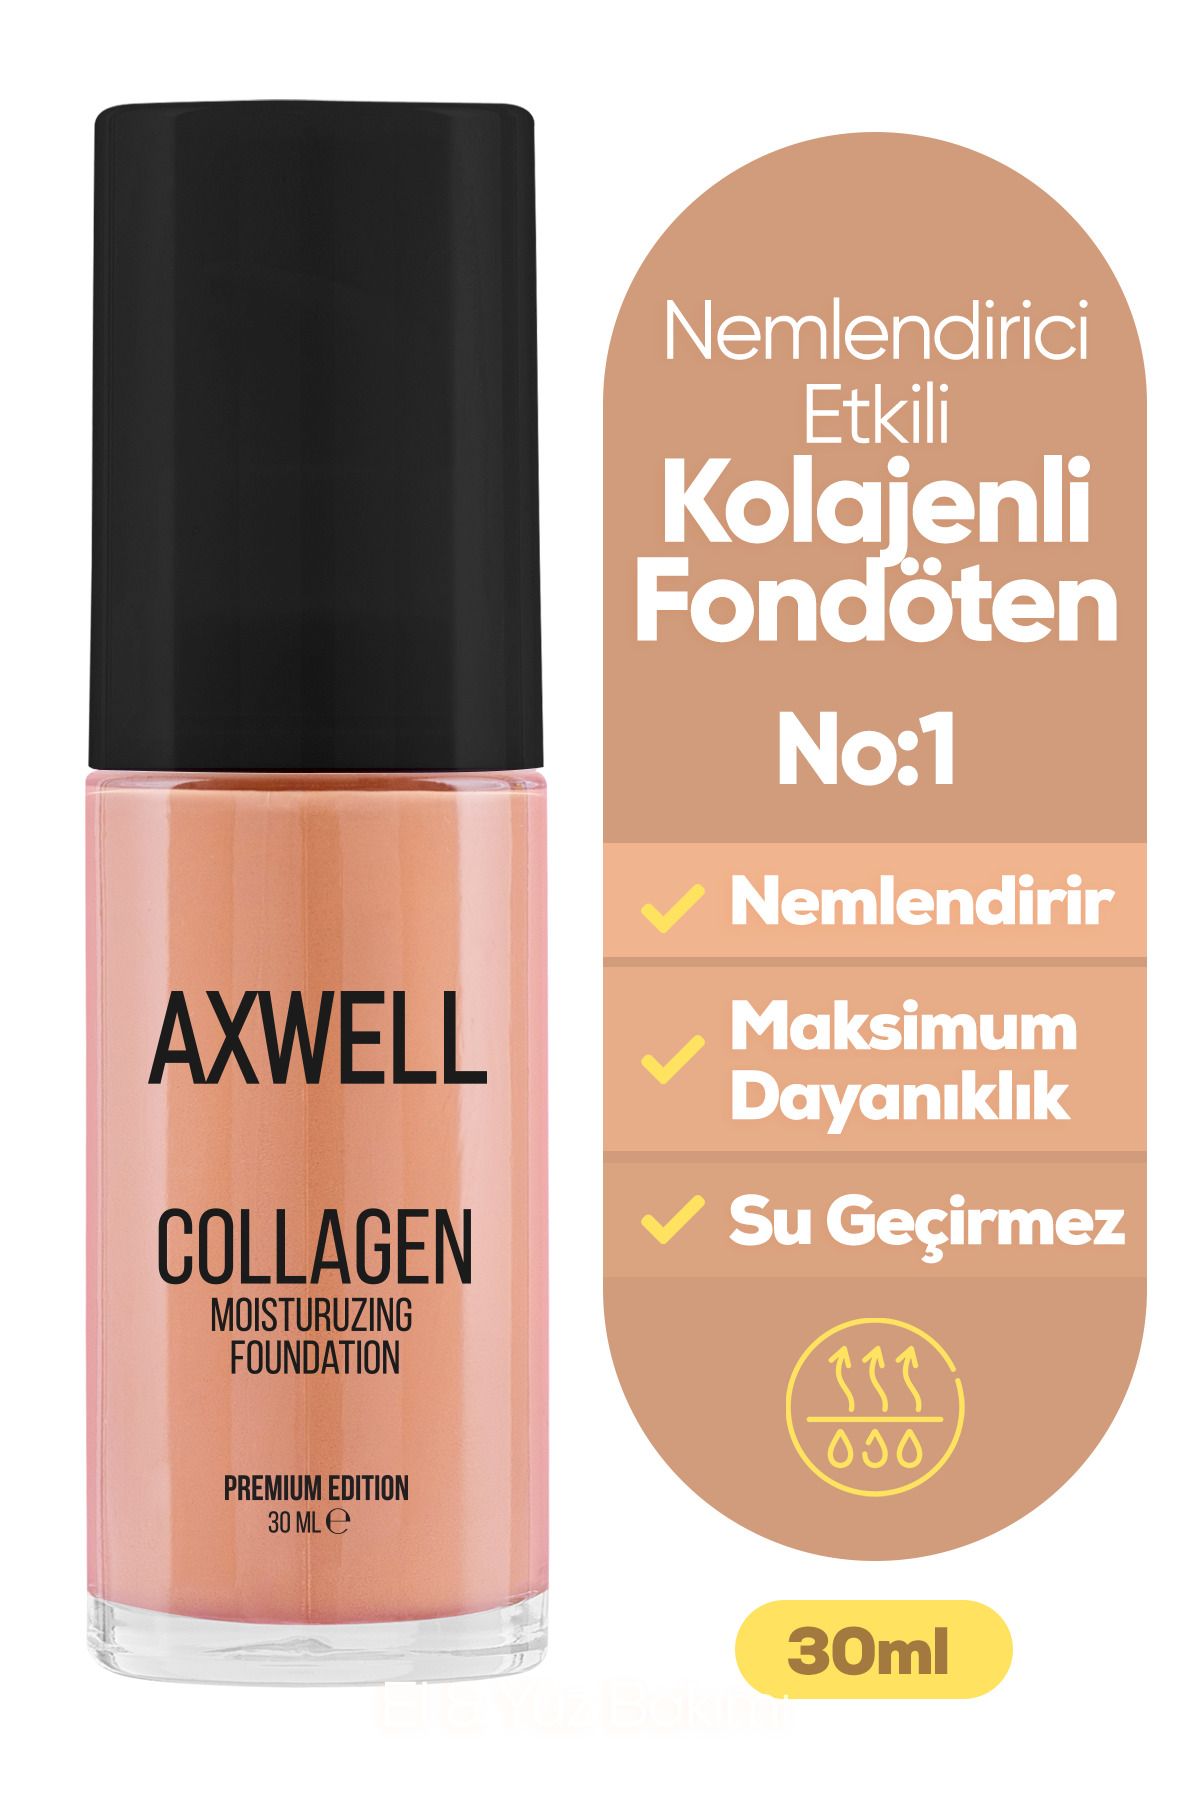 AXWELL Premıum Edıtıon Collagen Foundatıon ( Kolajenli Fondöten ) Nemlendirici Etki 30 ml Lıght ( Aç